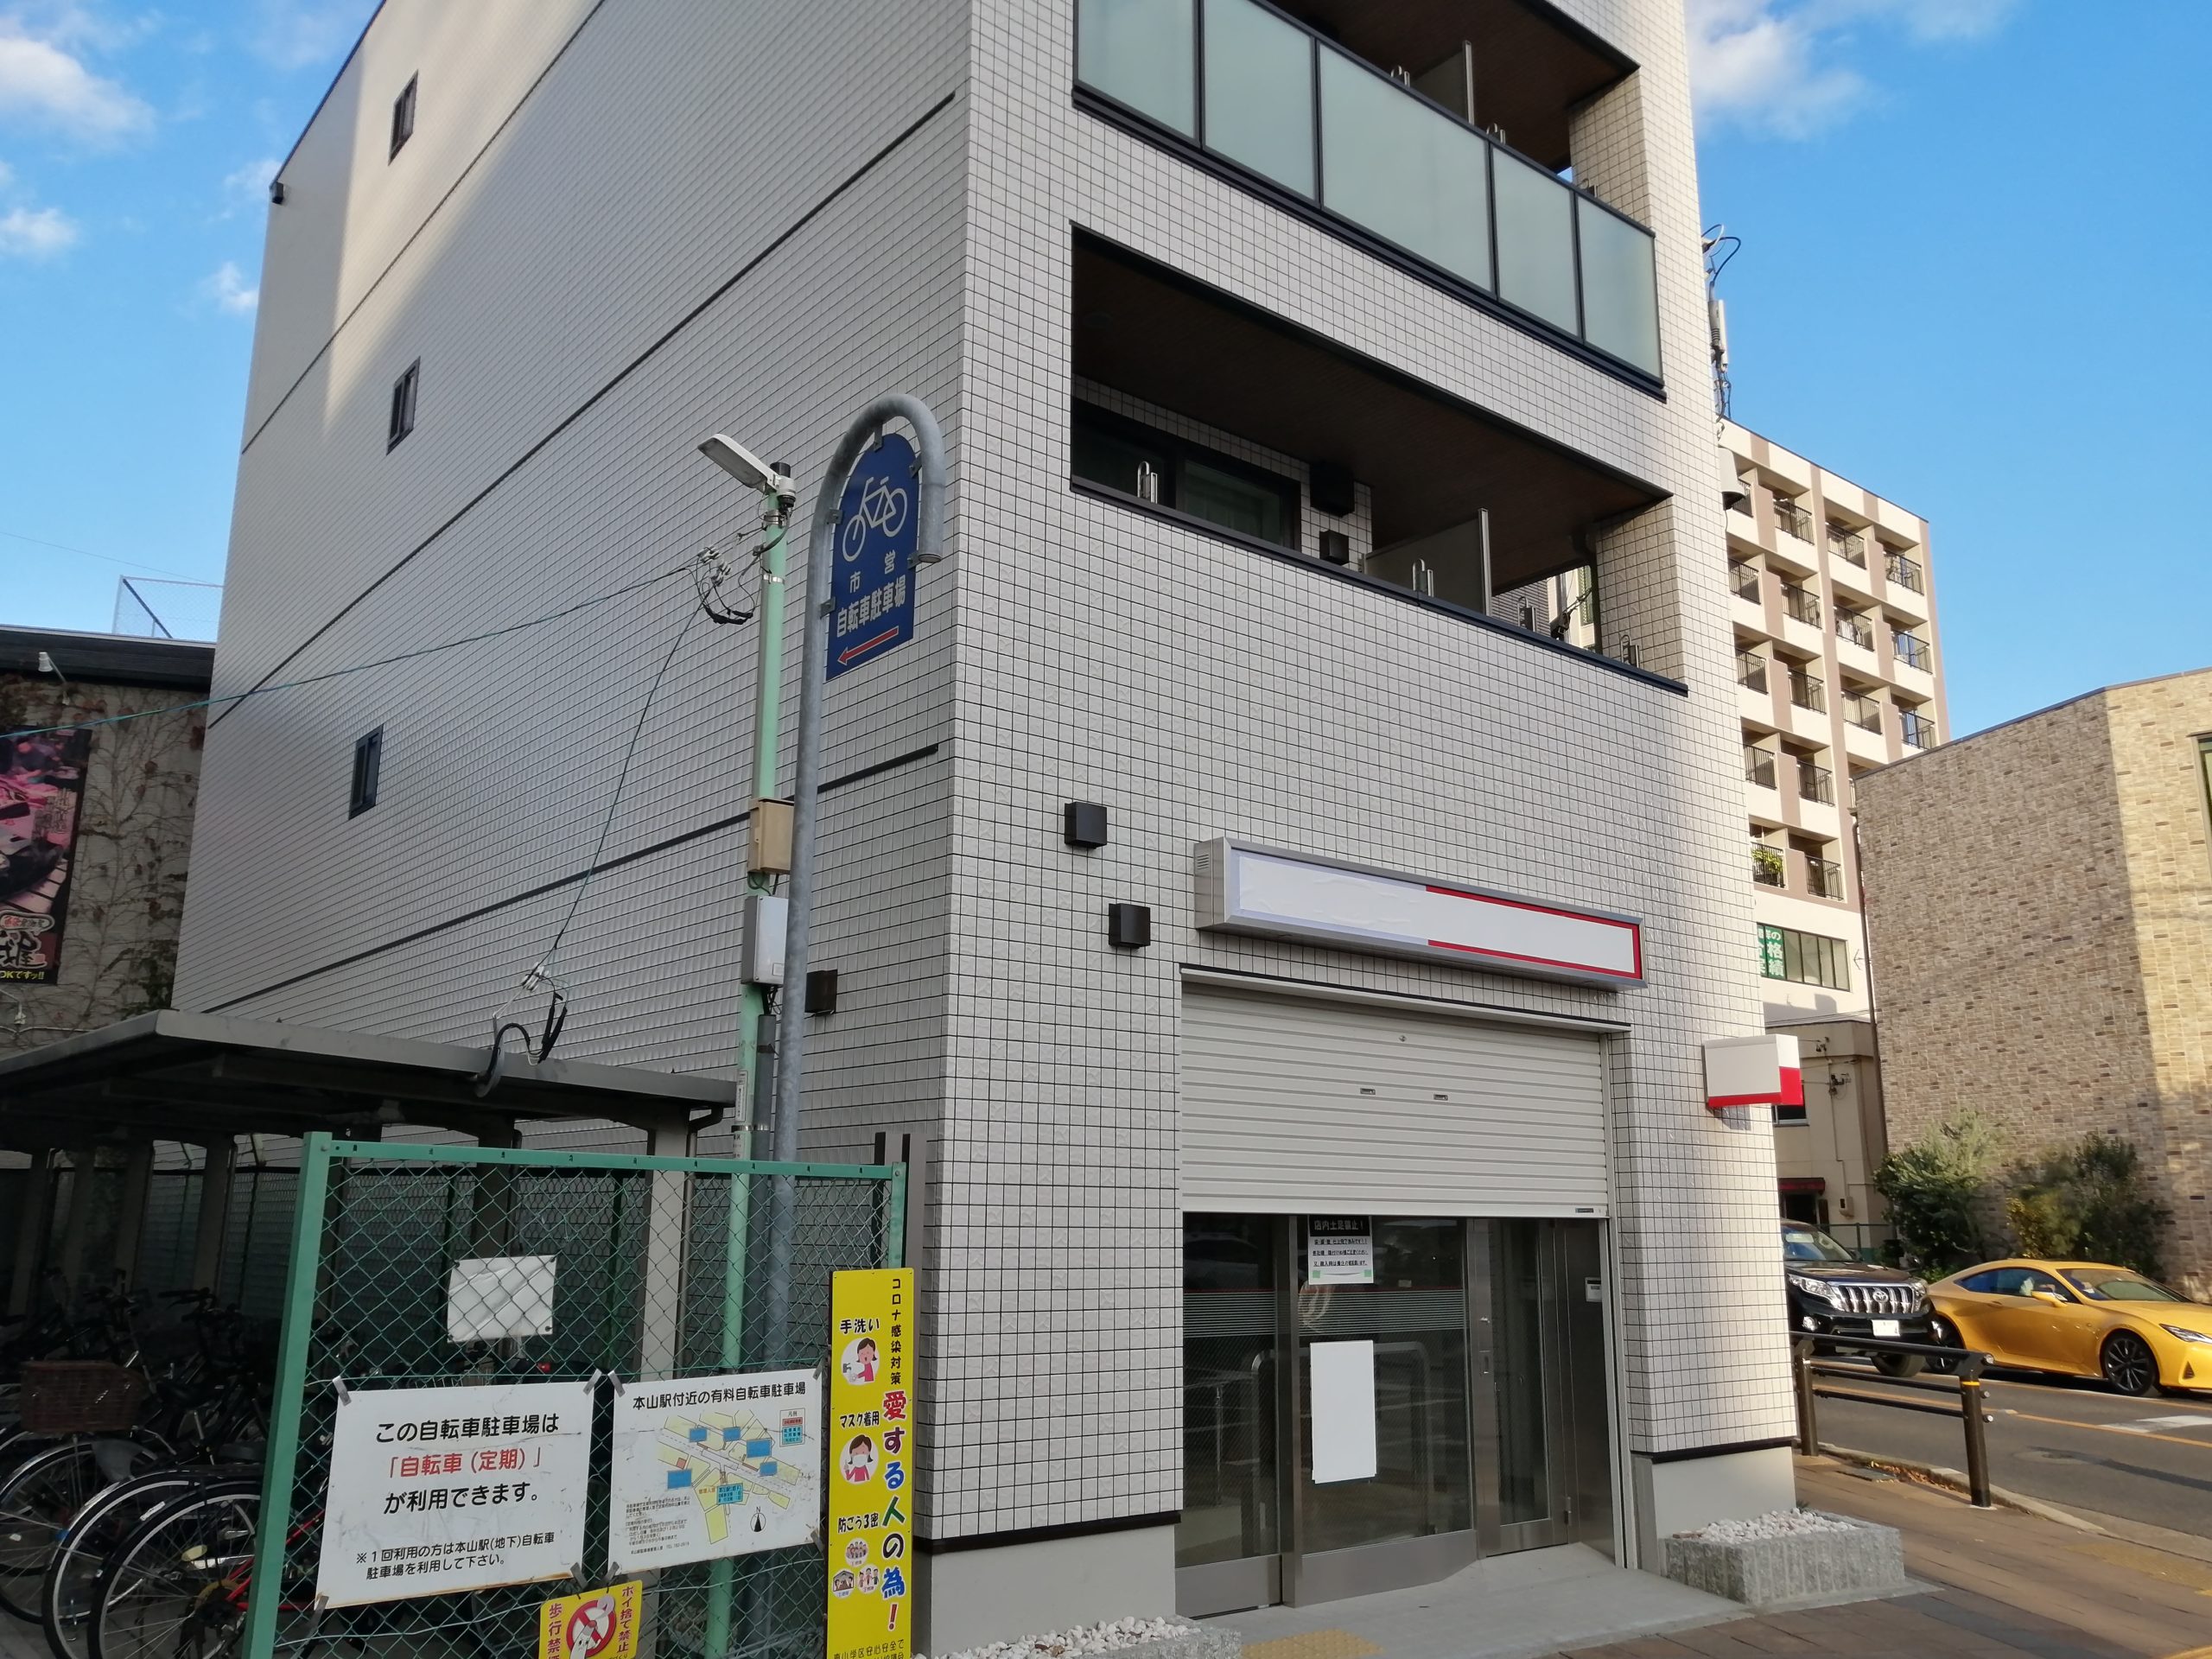 移転 12 3 本山の 三菱ｕｆｊ銀行ａｔｍコーナー が移転 末盛通 から 本山駅前 へ ちくさん